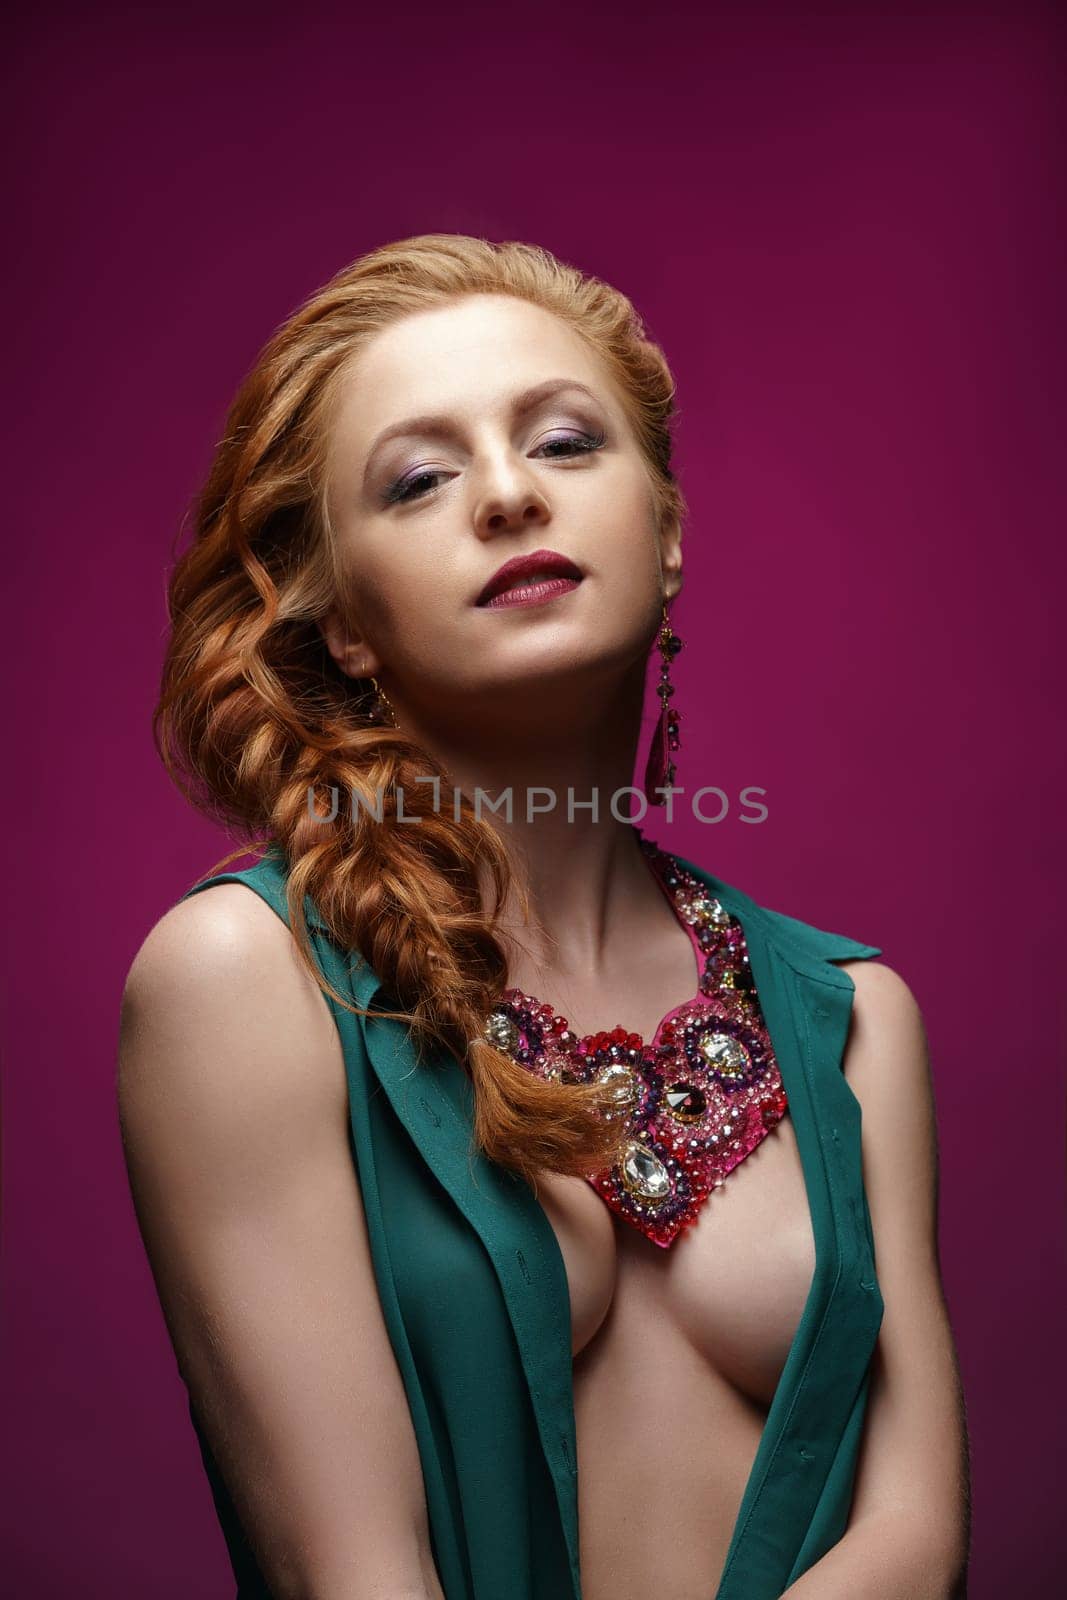 Studio photo of sexy redhead woman posing in jewelry